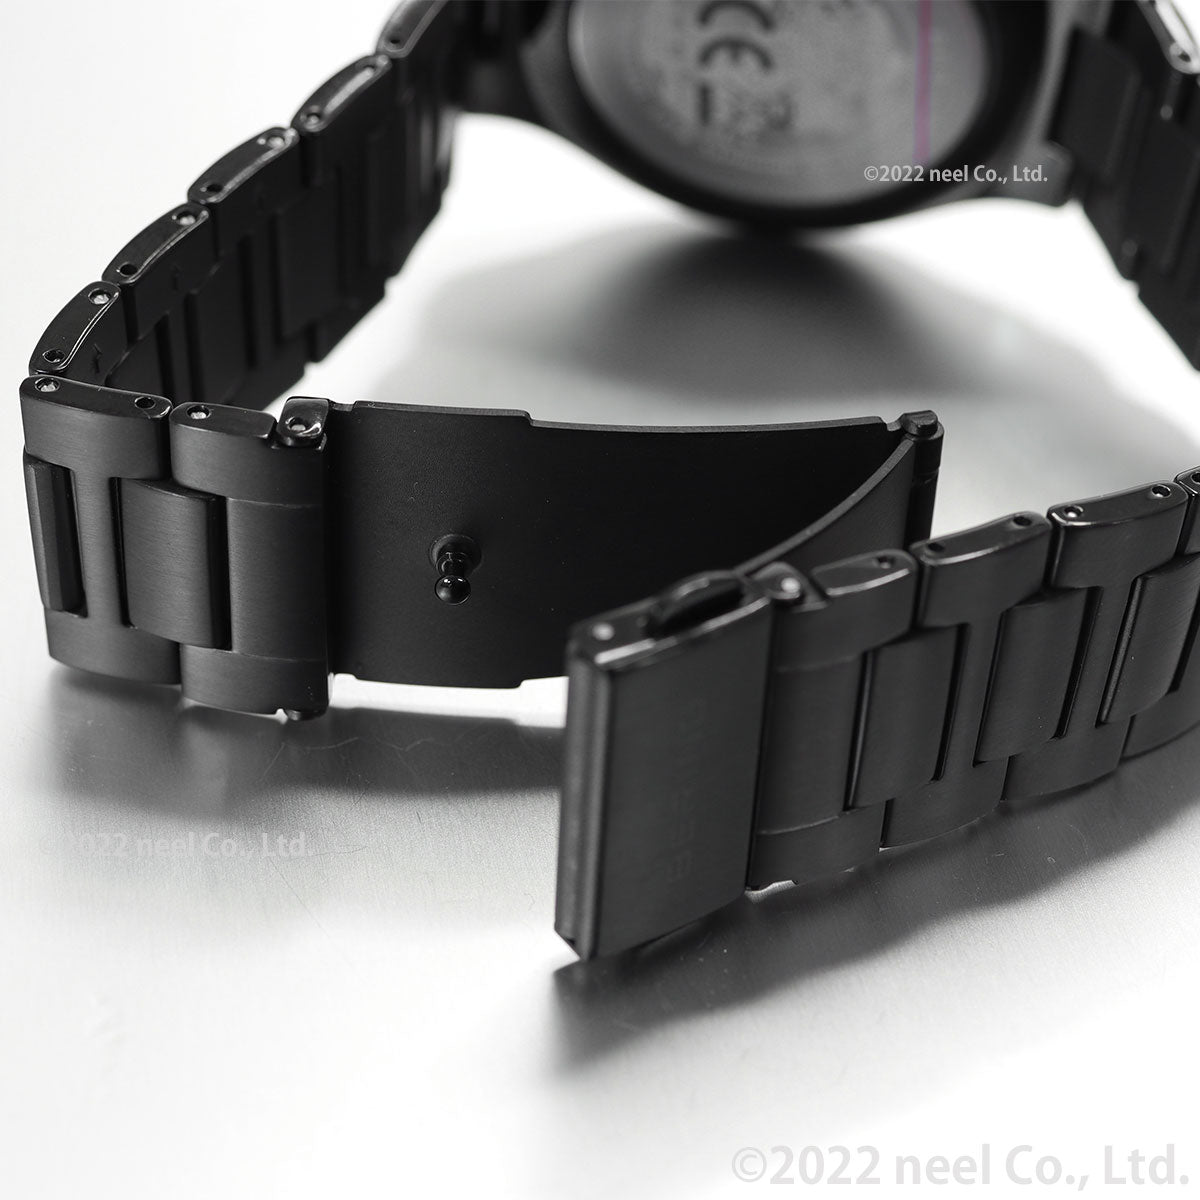 ベーリング BERING 腕時計 メンズ チタニウム TITANIUM チタン 15240-728